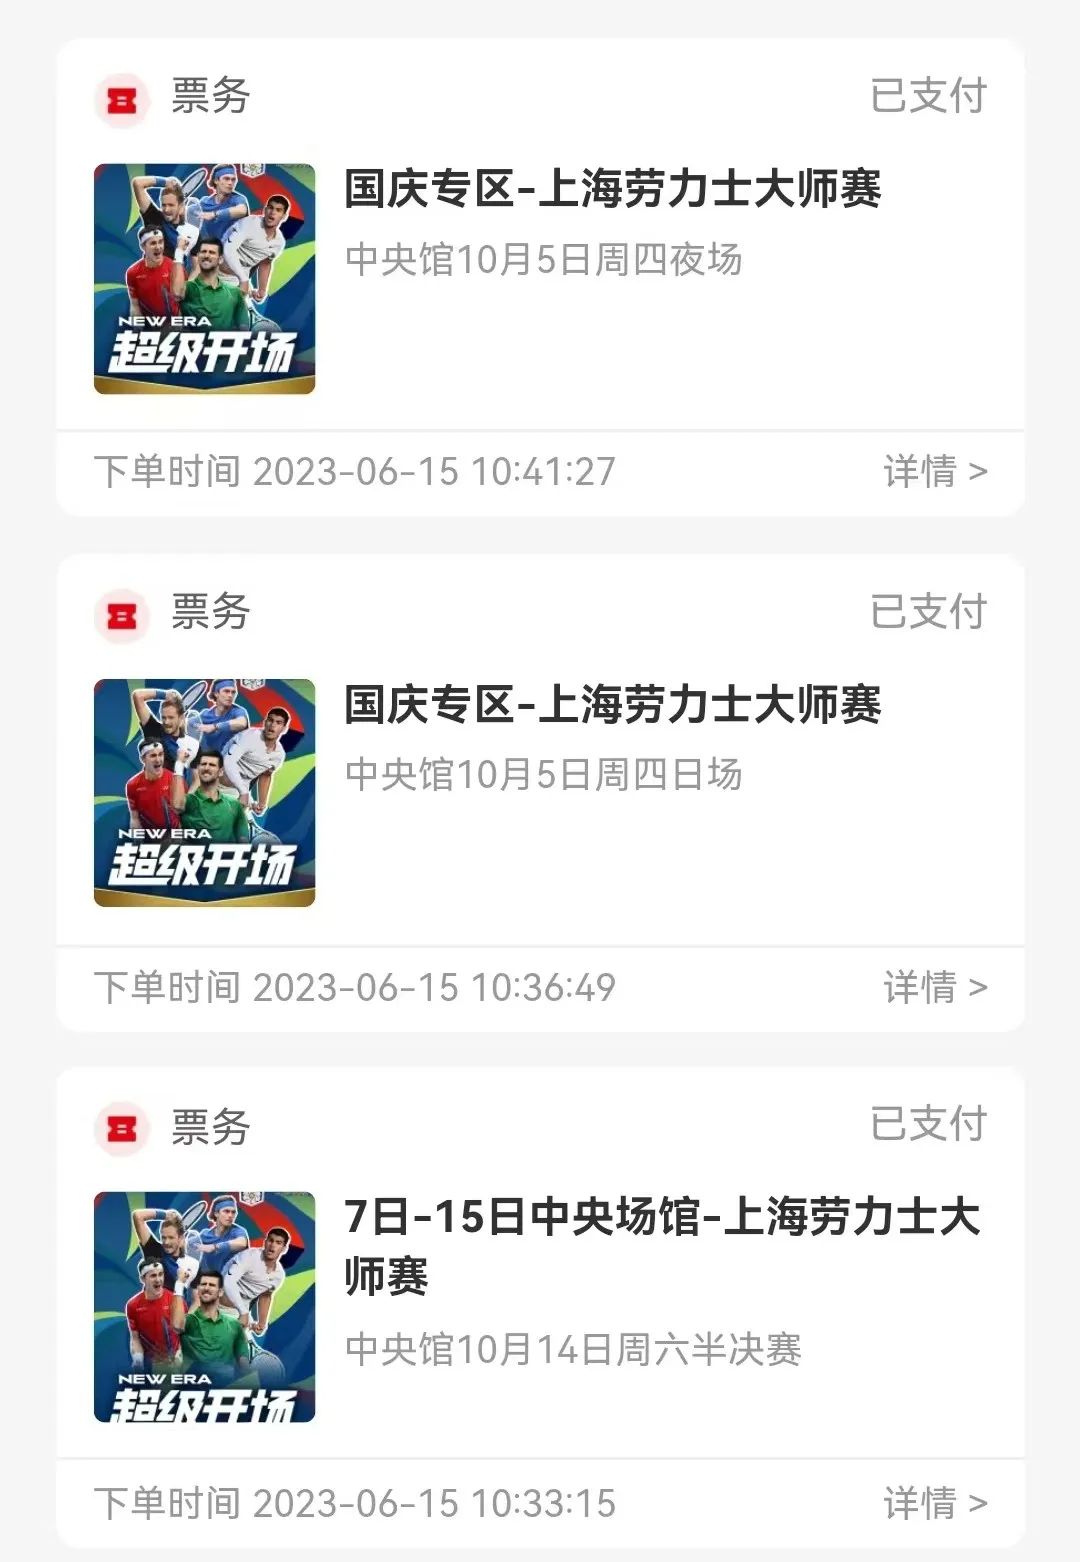 本文图片均为“上海新闻播送”微信公众号 图